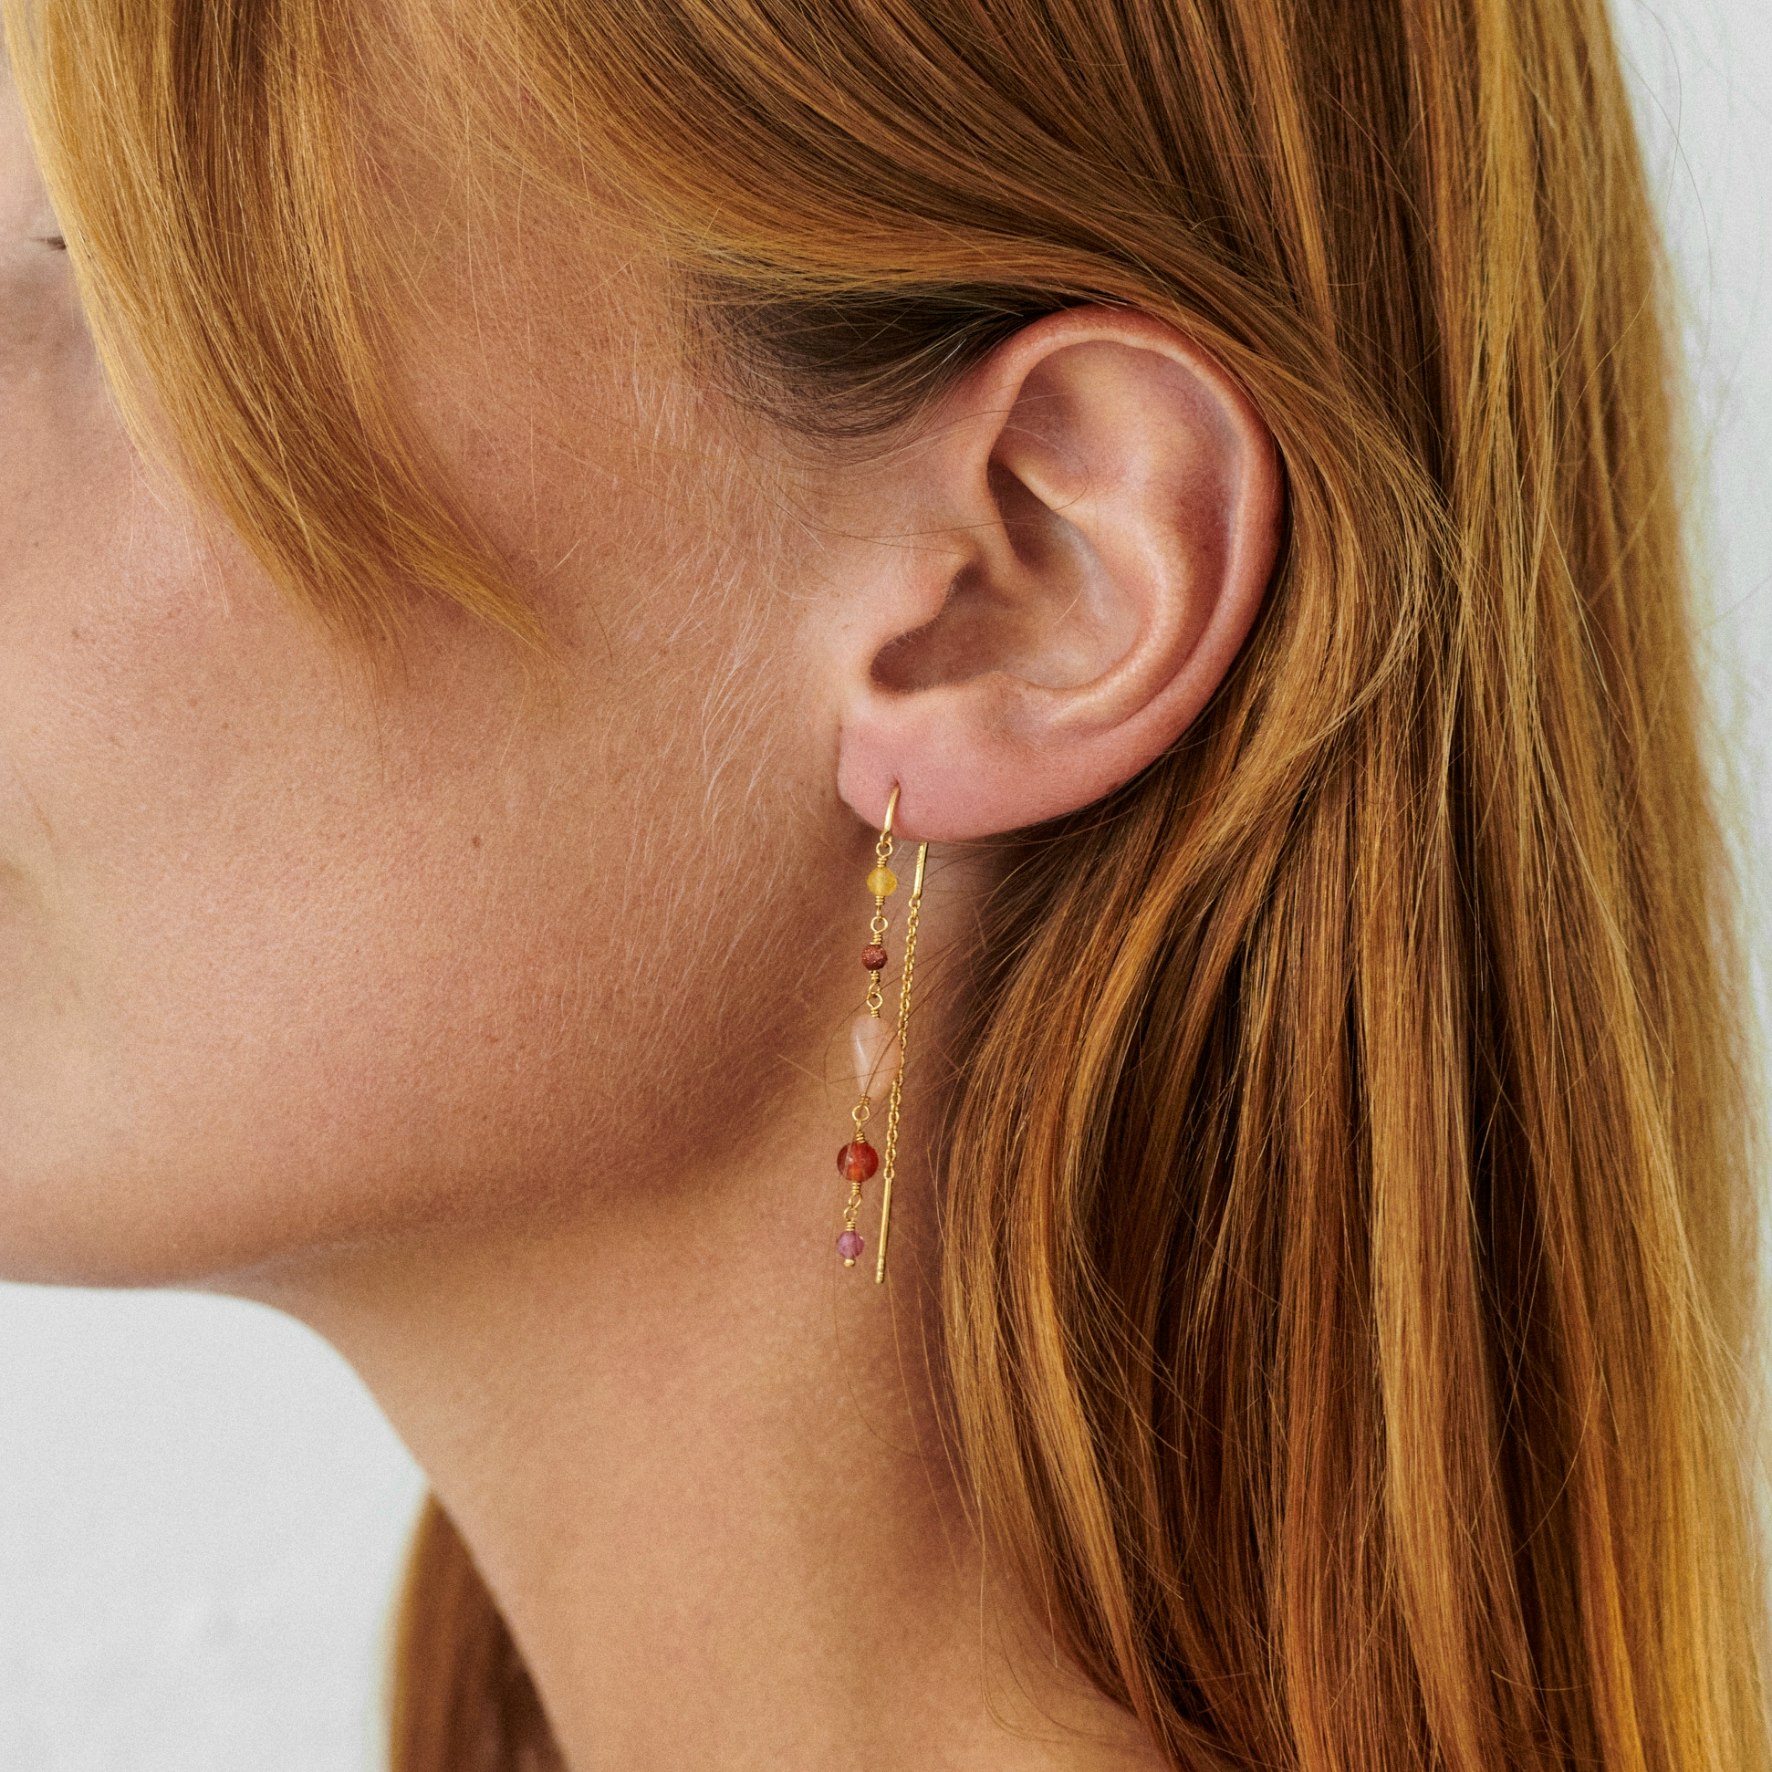 Golden Fields Earrings from Pernille Corydon in Silver Sterling 925